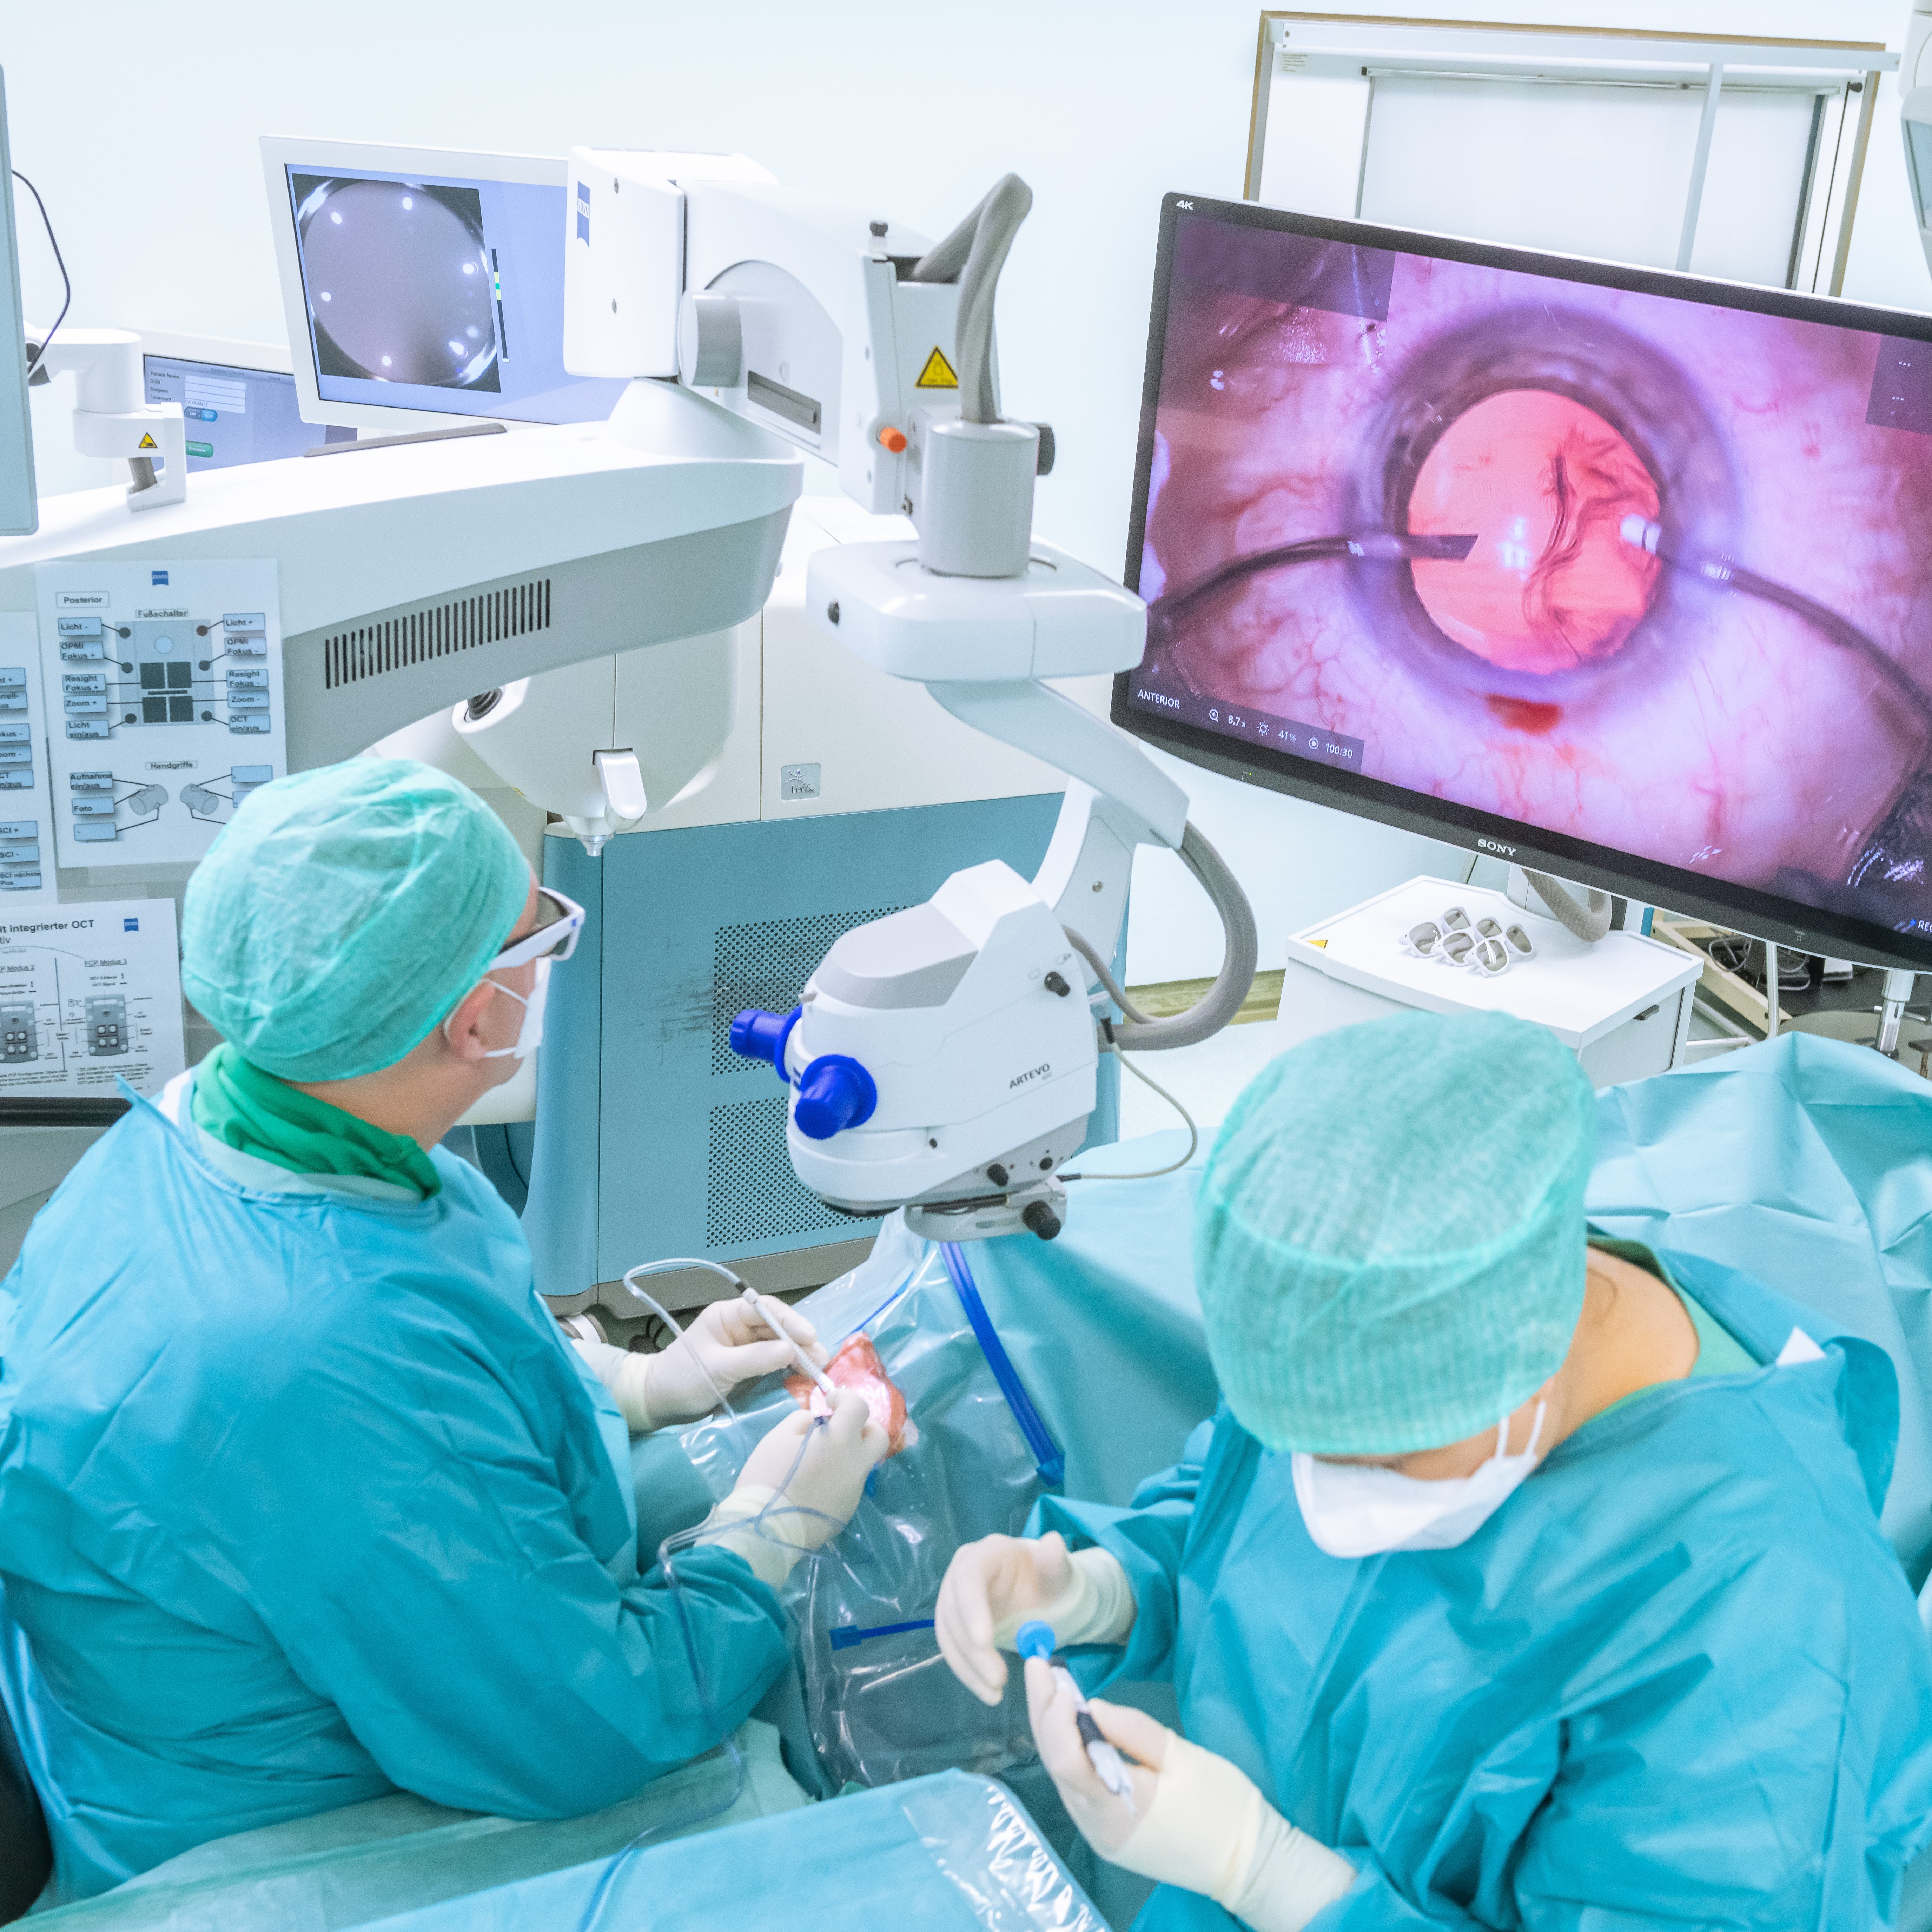 Zwei Personen in OP-Kleindung in einem Operationssaal. Einer von beiden schaut auf einen Bildschirm, auf dem überdimensioniert ein Auge zu sehen ist.